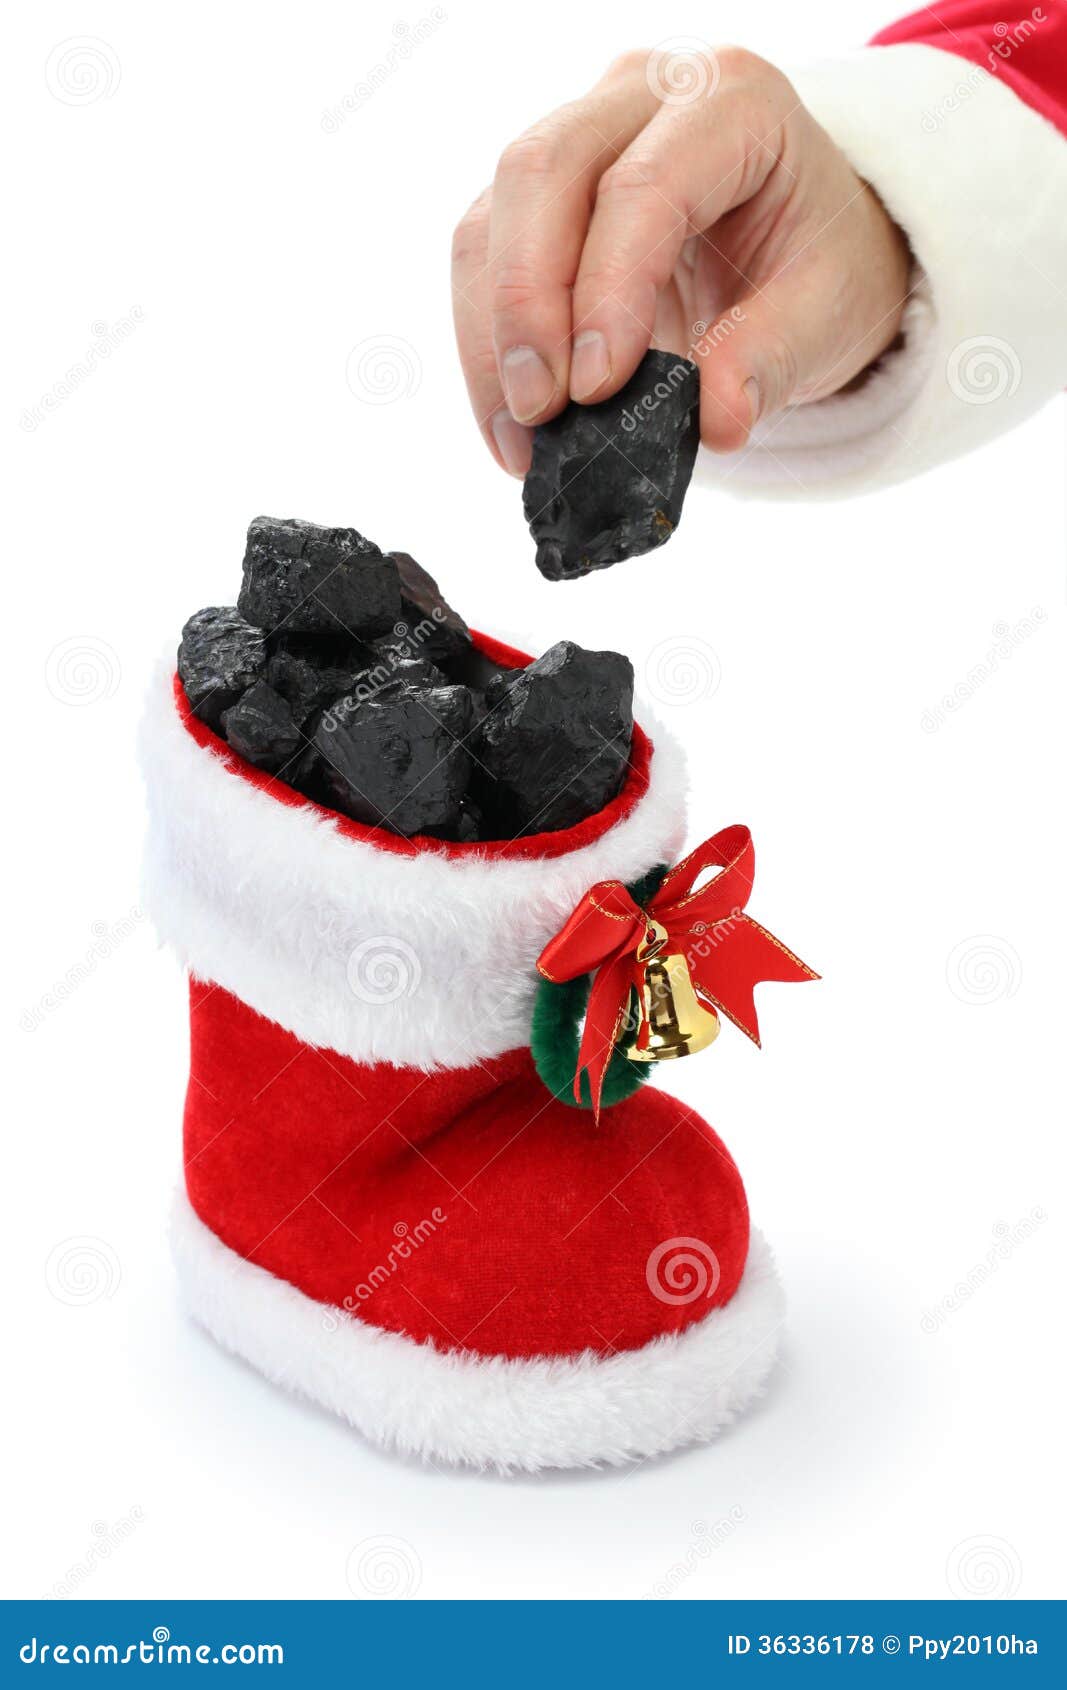 santa claus has put coal in the stocking